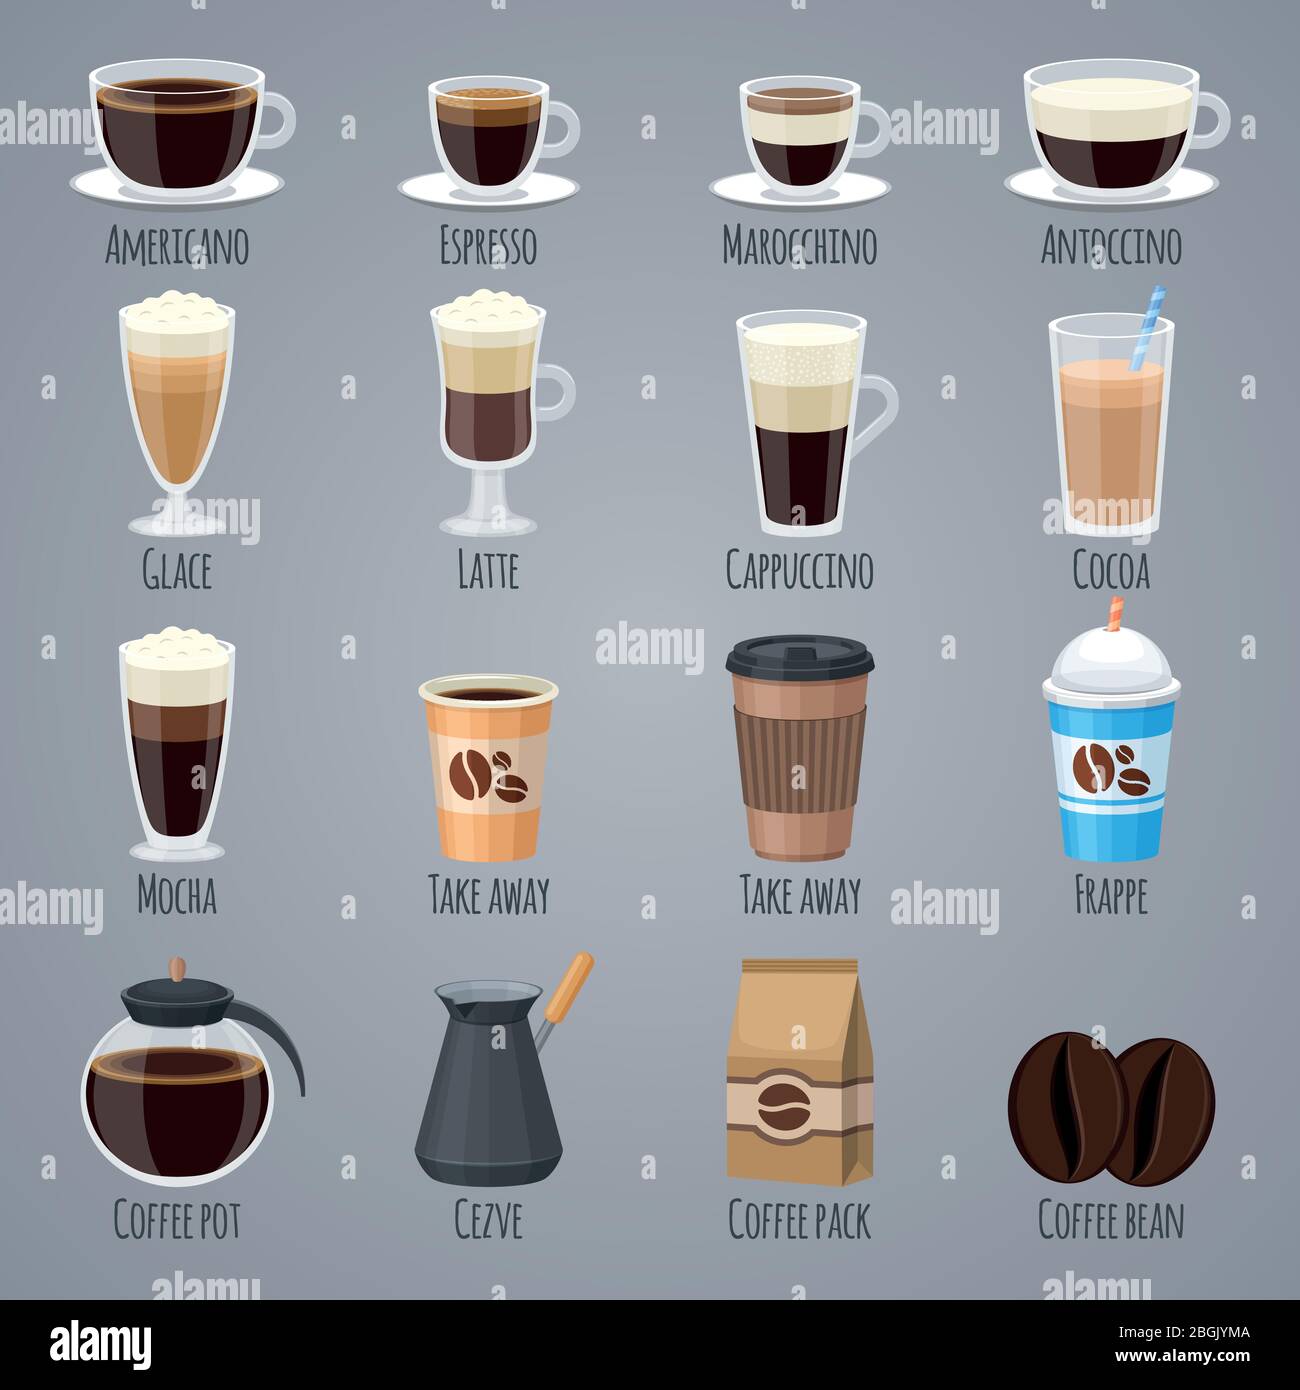 Espresso, latte, cappuccino dans les verres et les tasses. Types de café pour le menu de la maison de café. Les icônes vectorielles plates définissent la boisson, l'illustration de l'arôme de caféine du matin Illustration de Vecteur